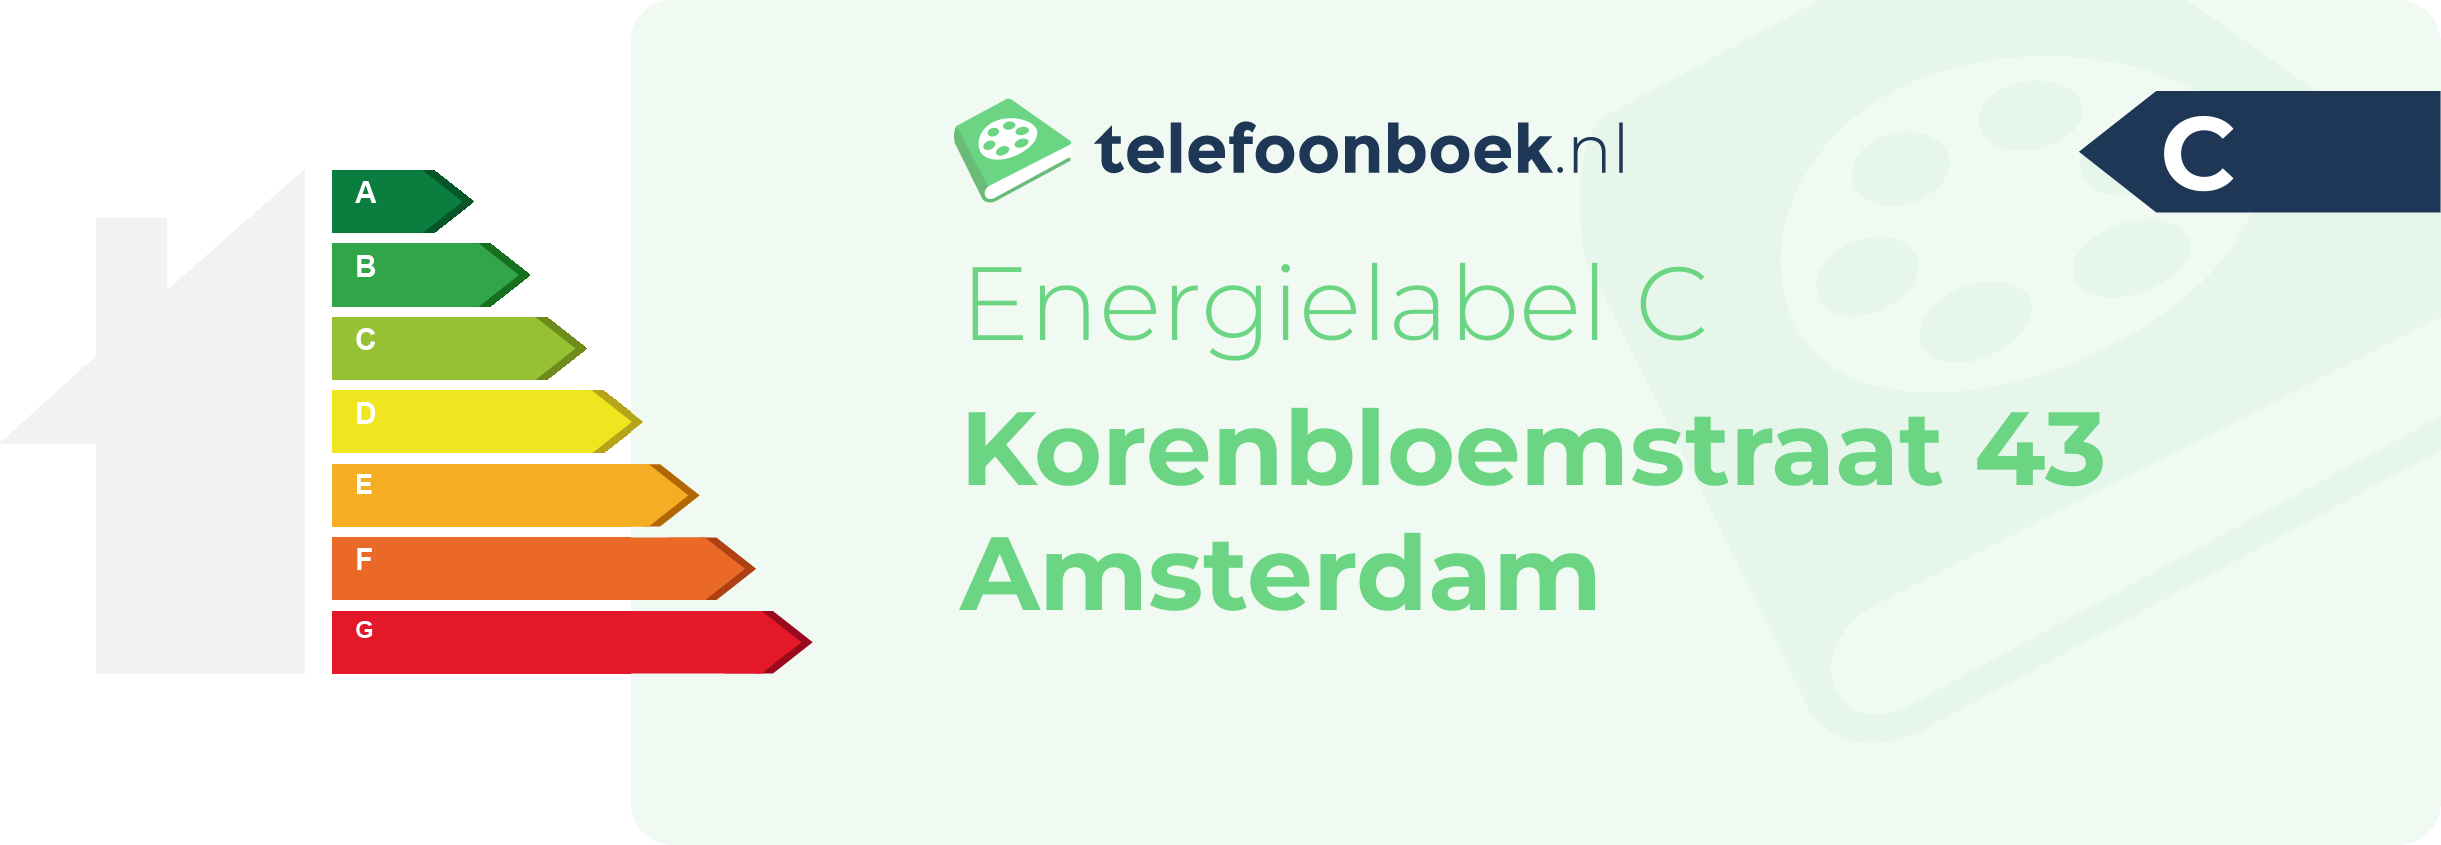 Energielabel Korenbloemstraat 43 Amsterdam